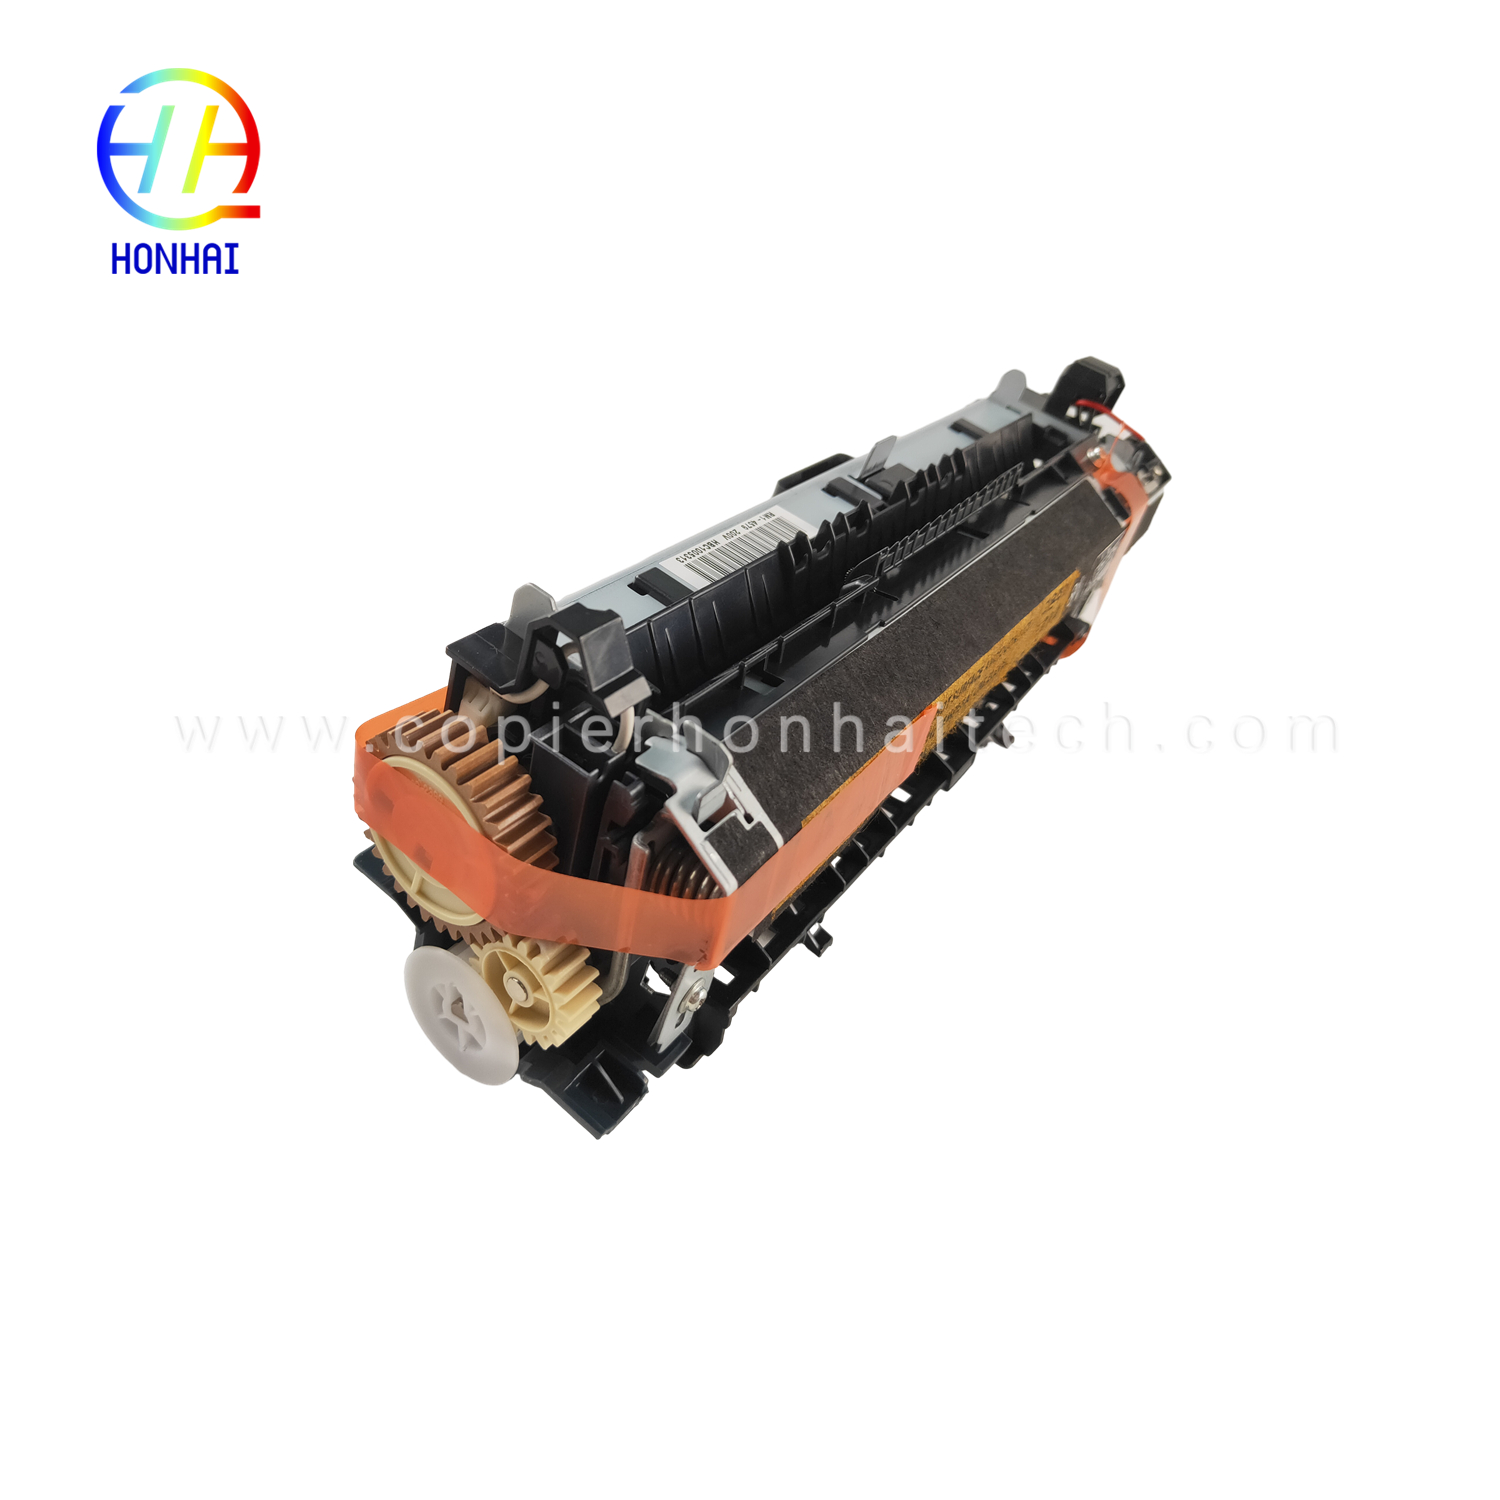 https://www.copierhonhaitech.com/fuser-assembly-for-hp-rm1-4554-000-rm1-4579-000-fuser-unit-product/